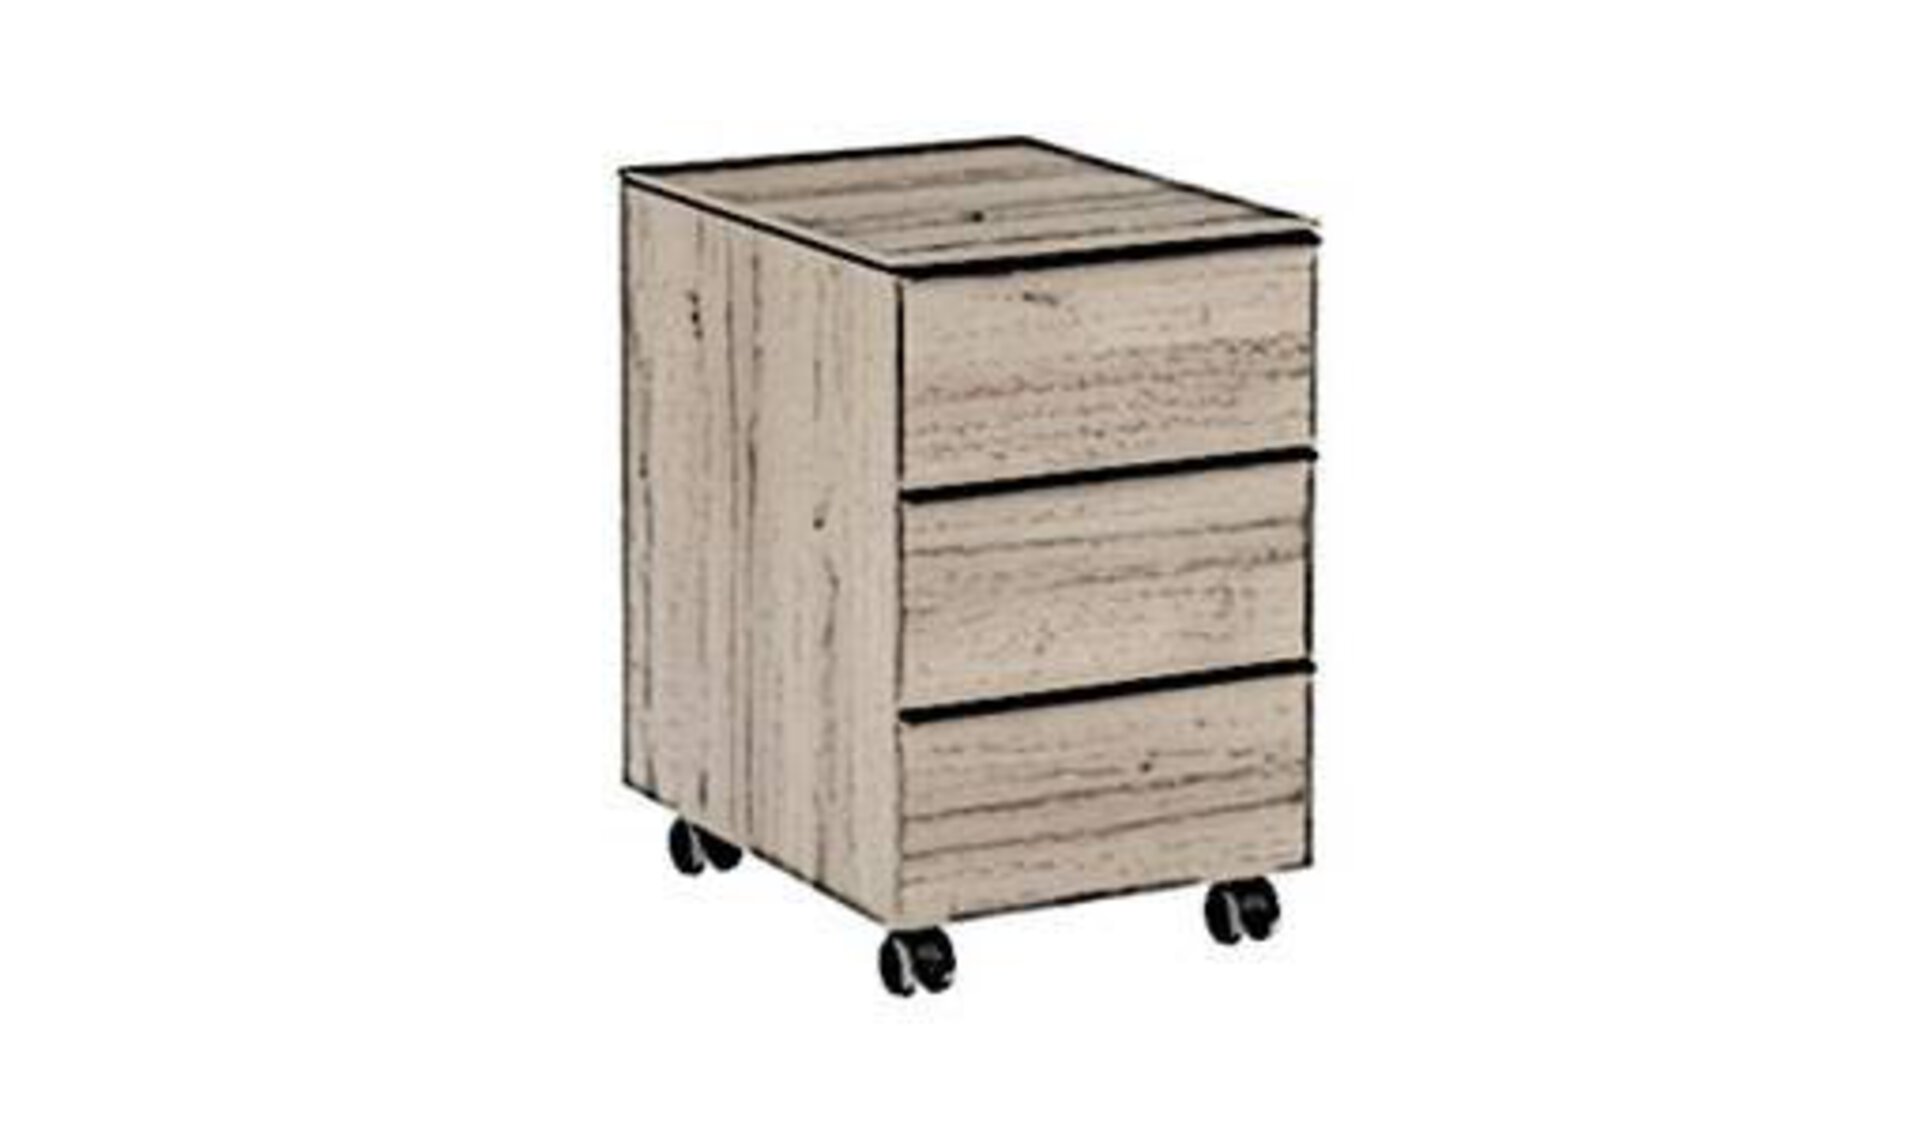 Stilisierter Bürocontainer aus Holz steht sinnbildlich für das praktische Aufbewahrungssystem innerhalb eines Arbeitszimmers..